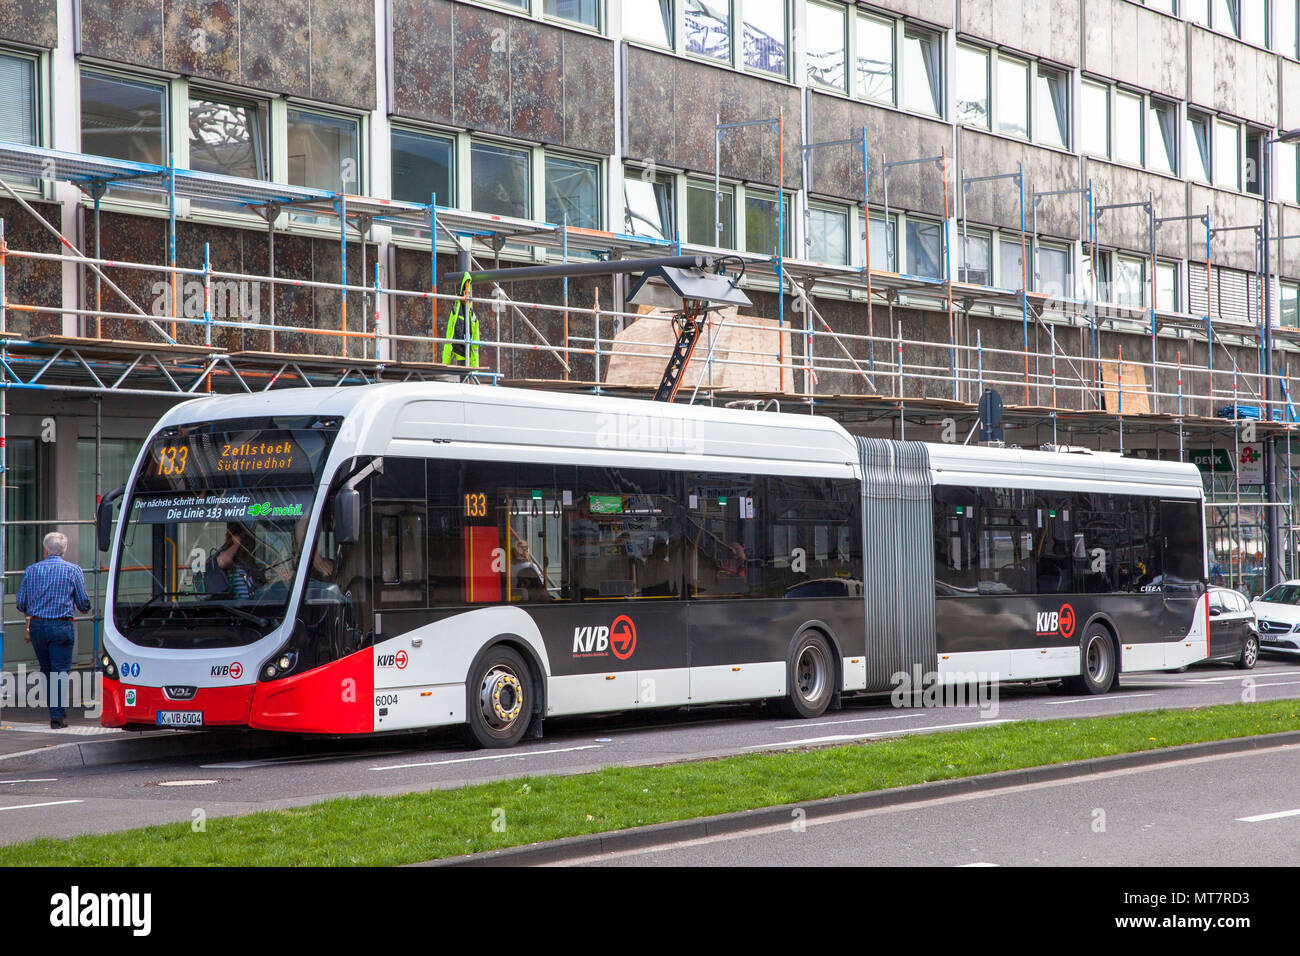 Electric Bus der Linie 133 an eine Ladestation am Breslauer Platz, Köln, Deutschland. Elektrobus der Linie 133 ein einer Ladestation bin Breslauer P Stockfoto